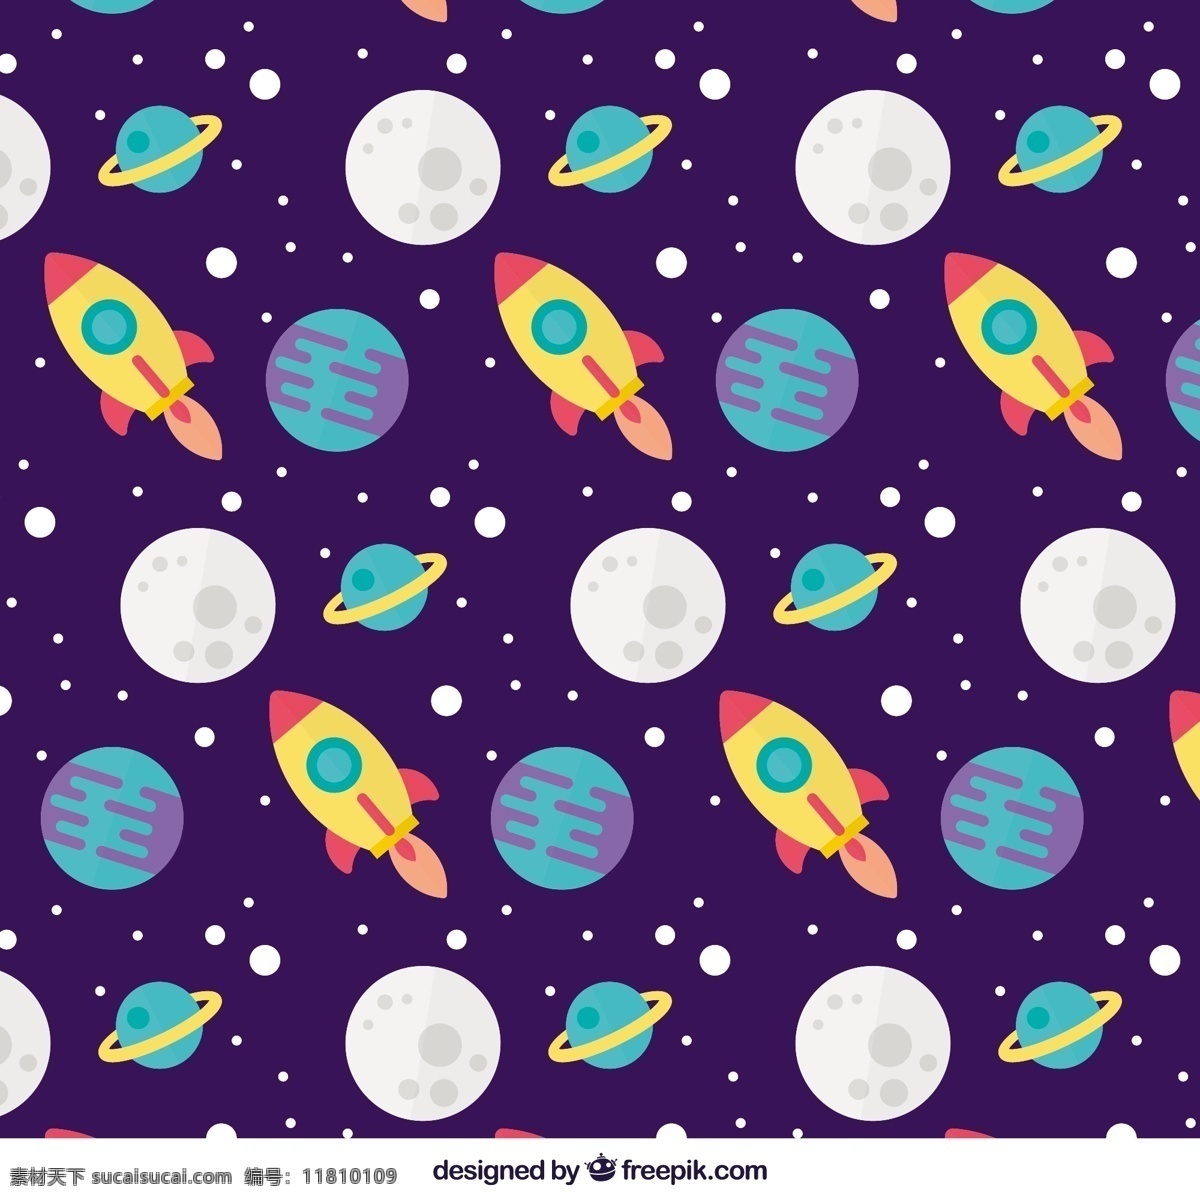 月亮 行星 火箭 大 平面 图案 背景 灯光 色彩 装饰 多彩的背景 夜晚 无缝的图案 平面设计 图案背景 镶嵌 无缝 卫星